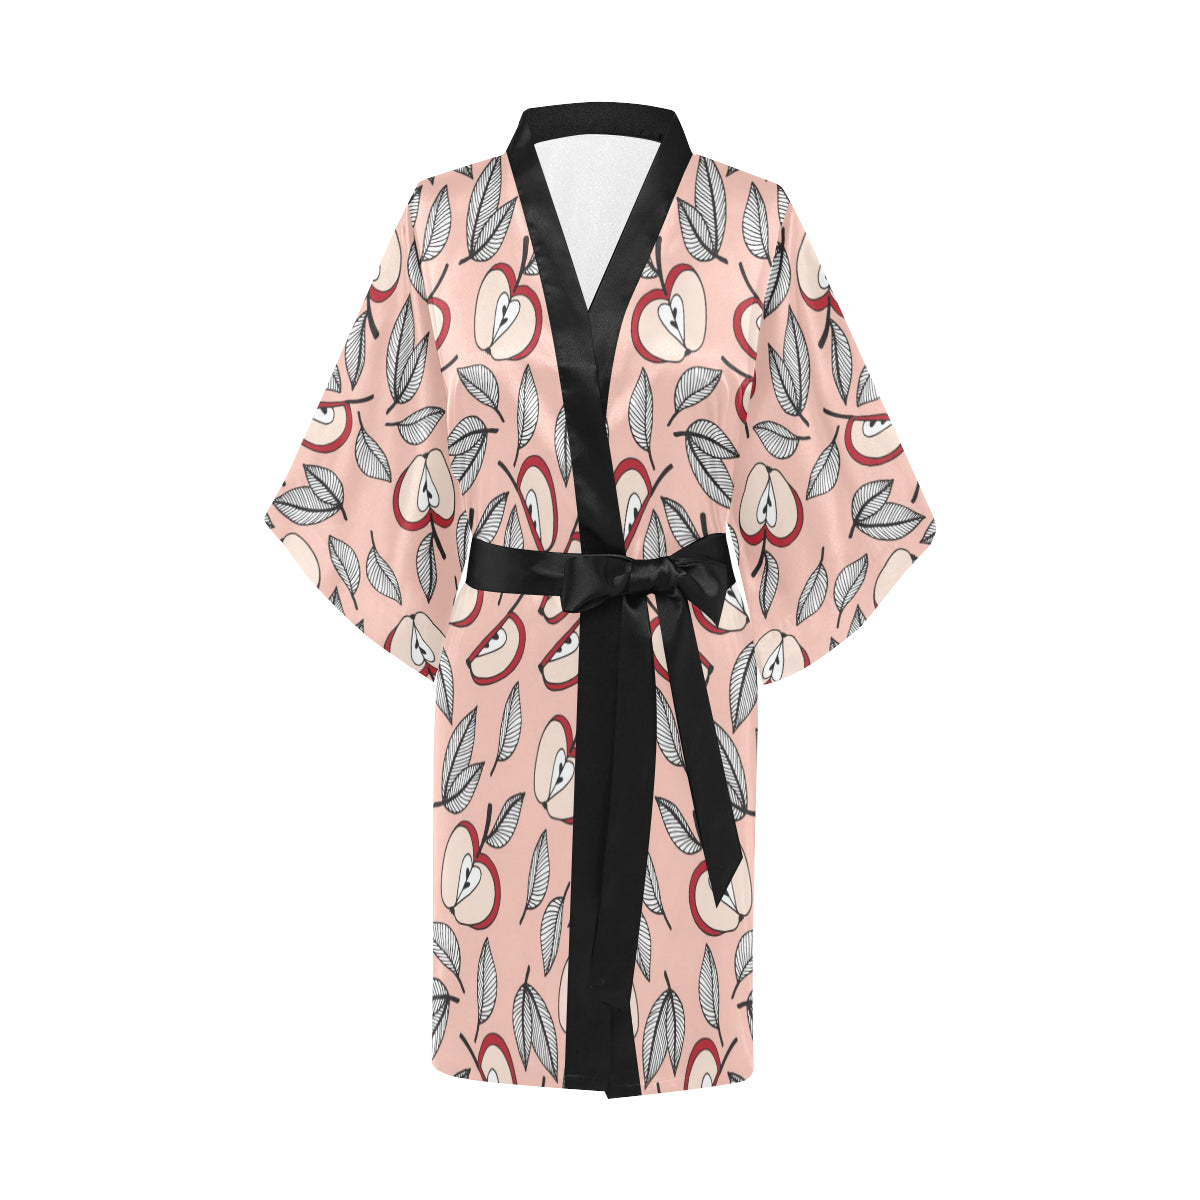 Apple Pattern Print Design AP04 Women Kimono Robe